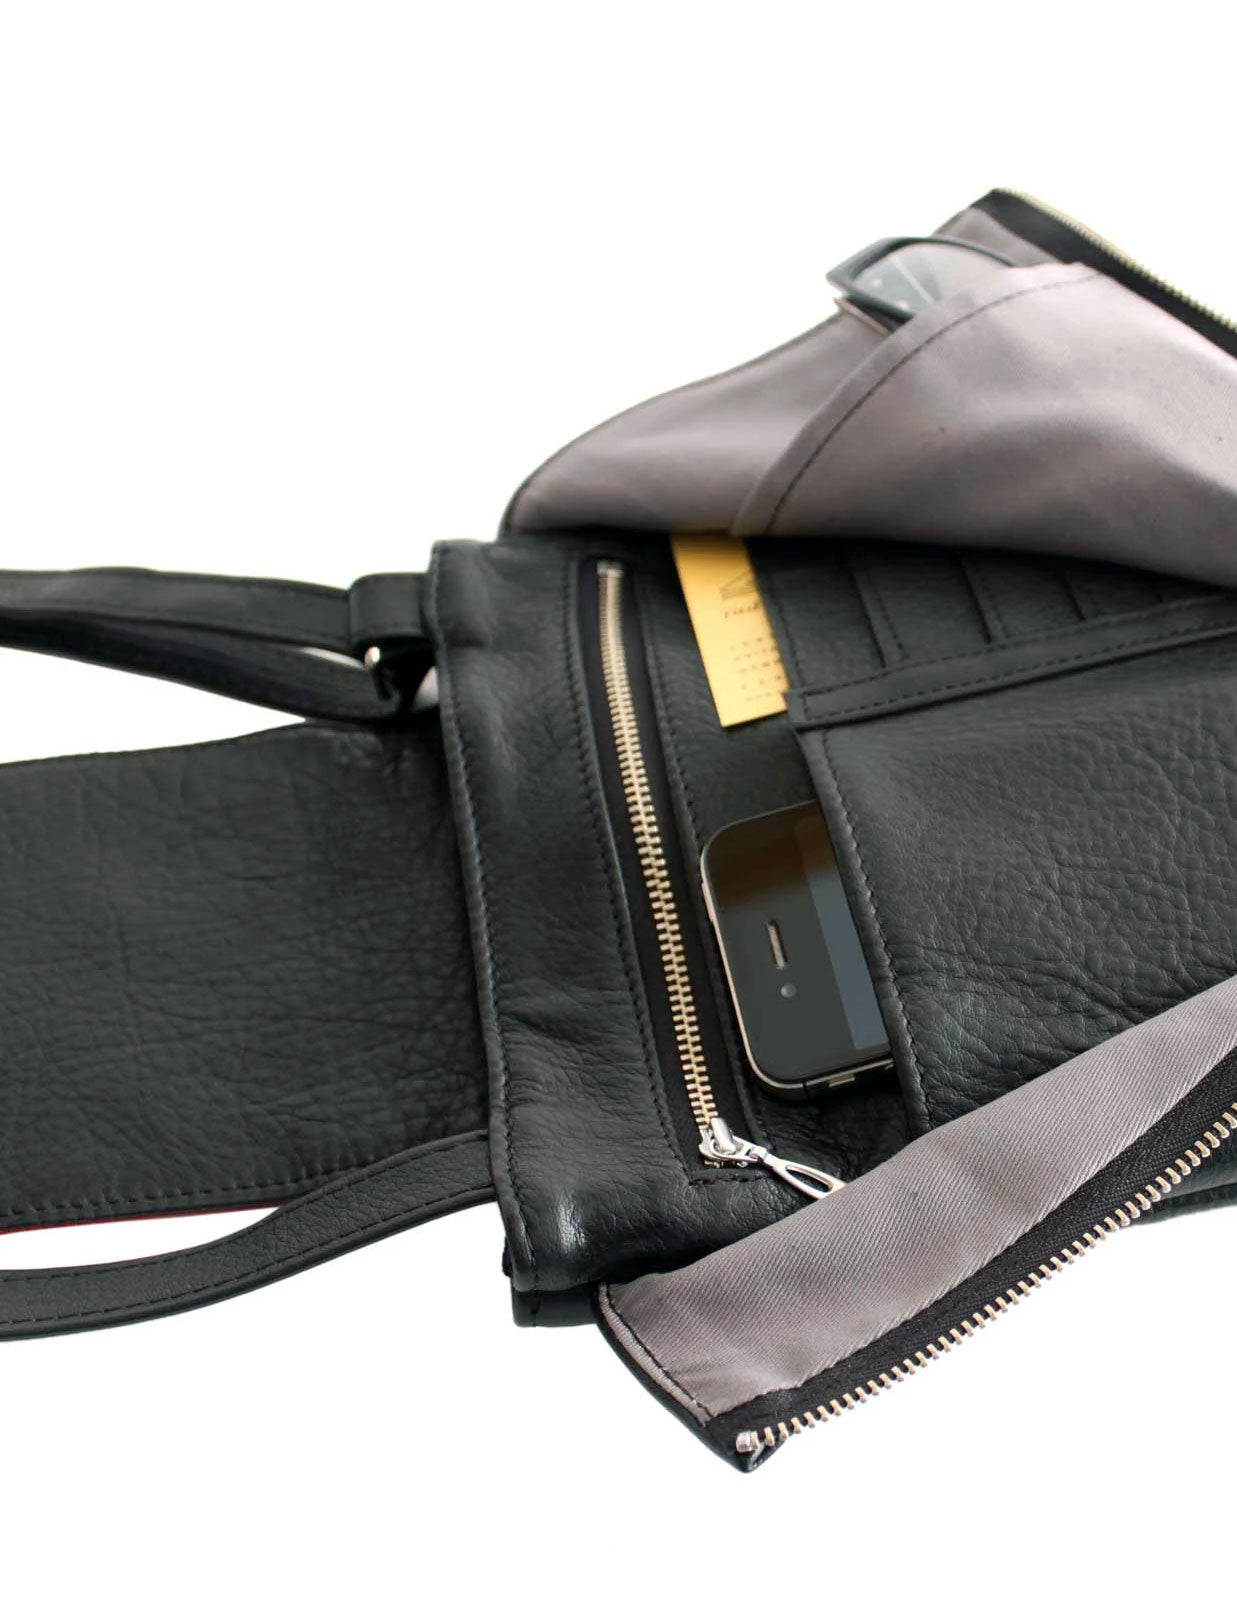 Baggallini Crossbody Shoulder Purse 2 Compartments Zip Close Brown  Adjustable | eBay